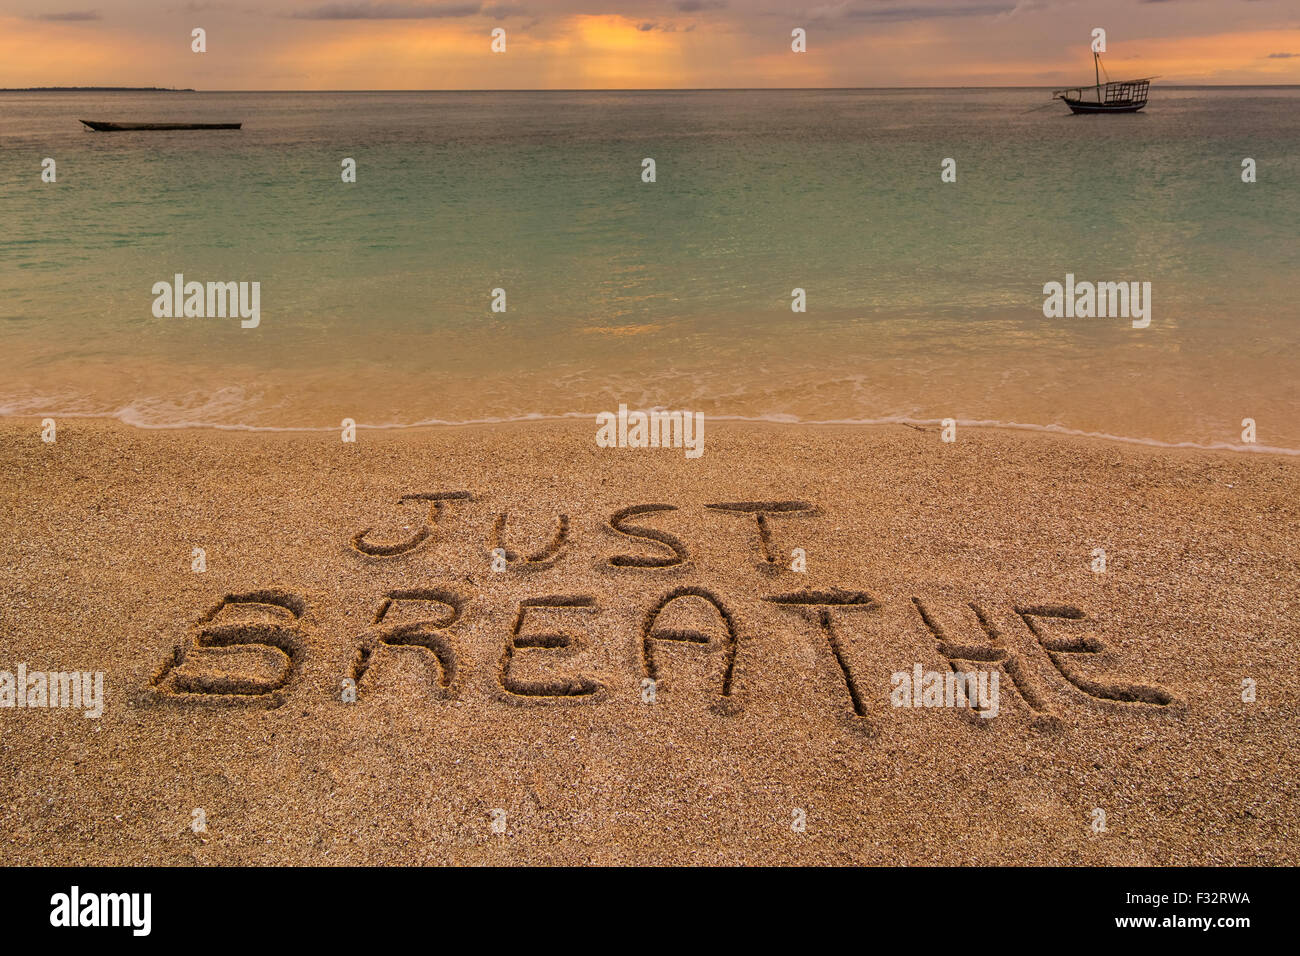 Auf dem Bild einen Strand bei Sonnenuntergang mit den Worten auf dem Sand "einfach atmen Sie". Stockfoto